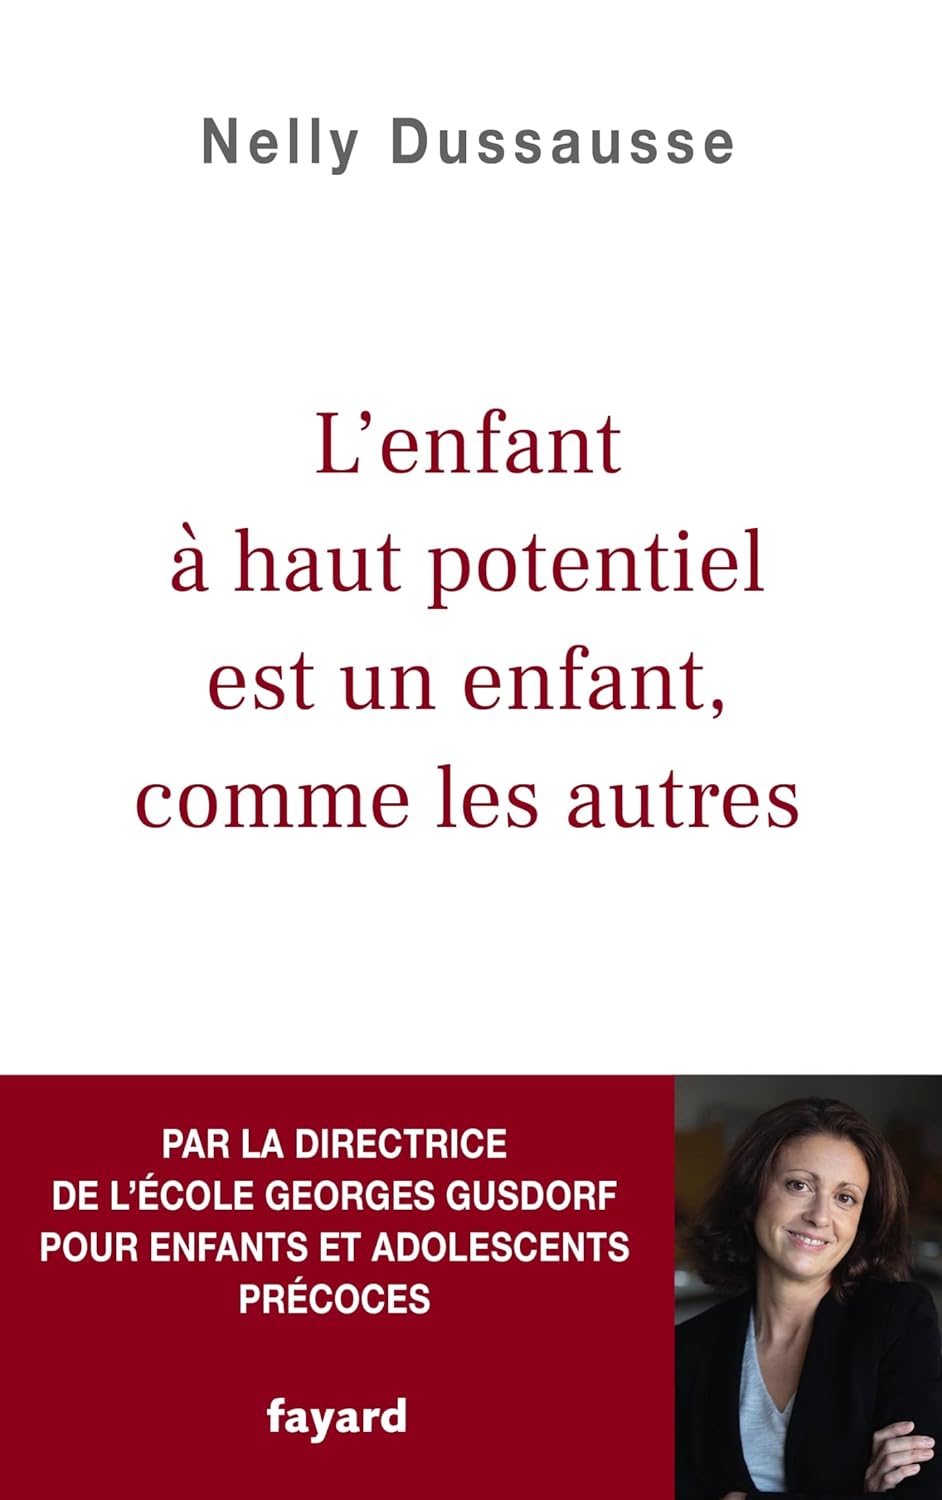 Nelly Dussausse: L'enfant à haut potentiel est un enfant comme les autres (Français language, Fayard)